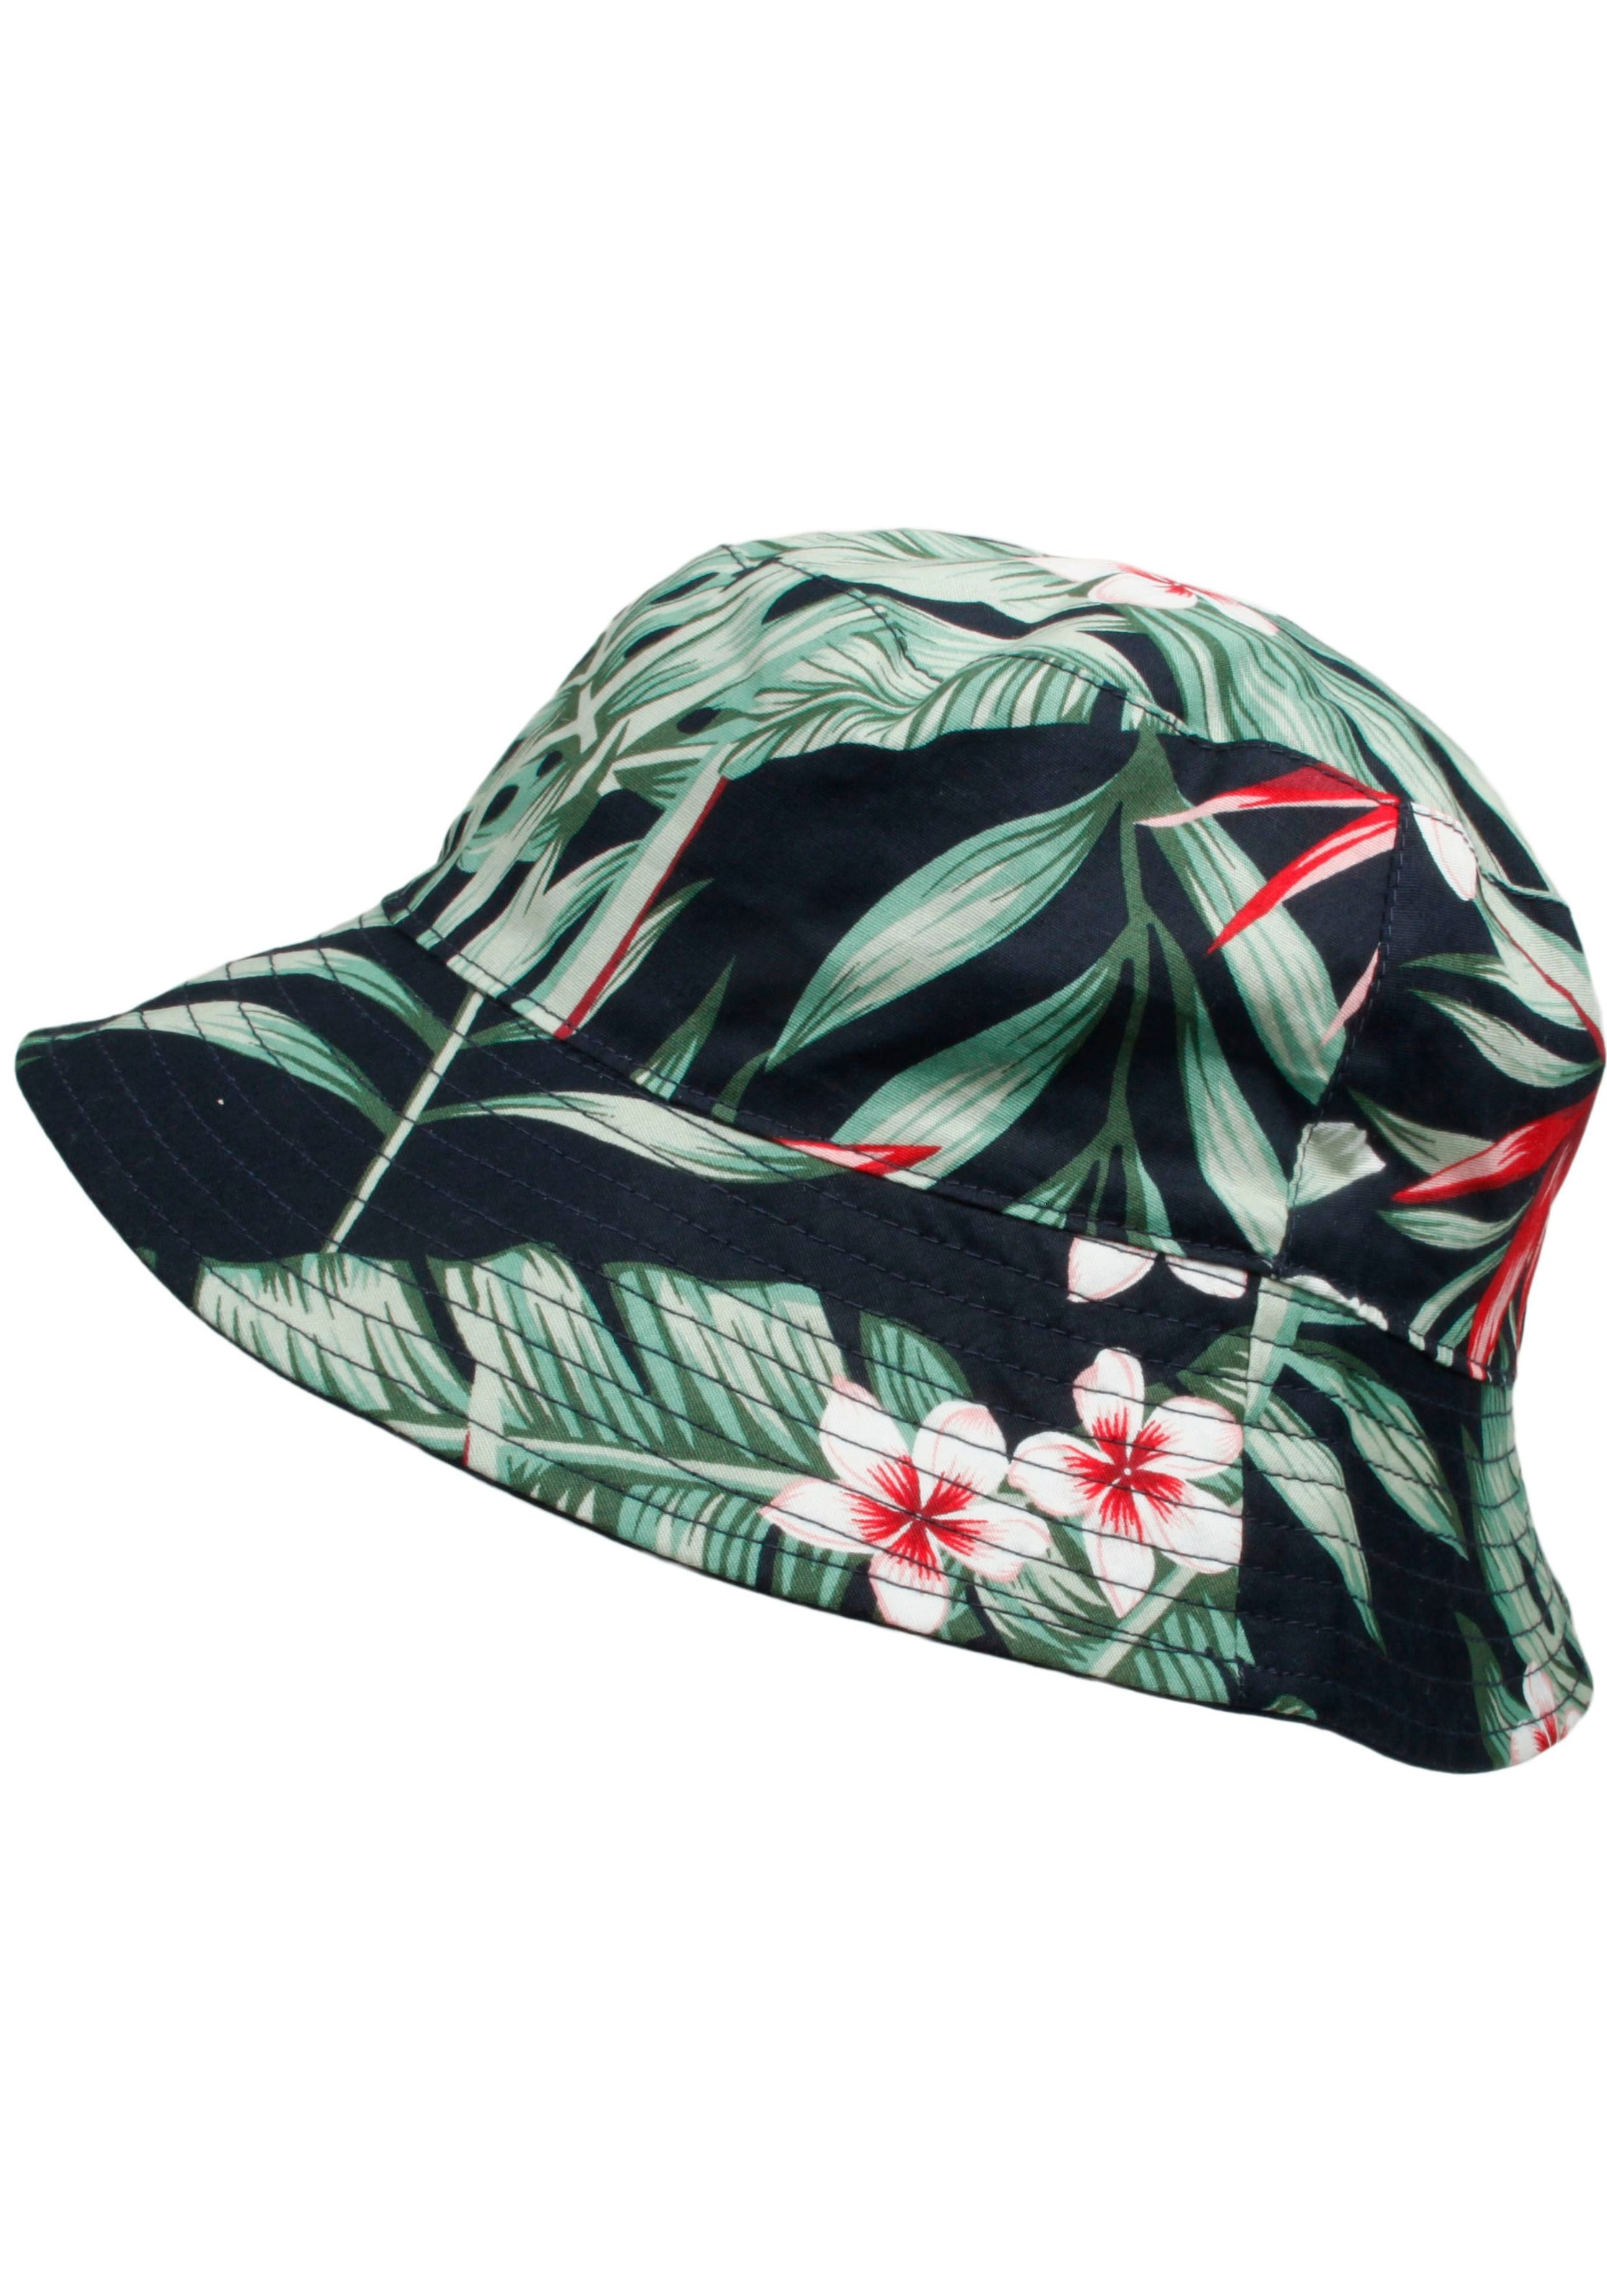 Hüte online kaufen | jetzt auf Hut shoppen Trendy